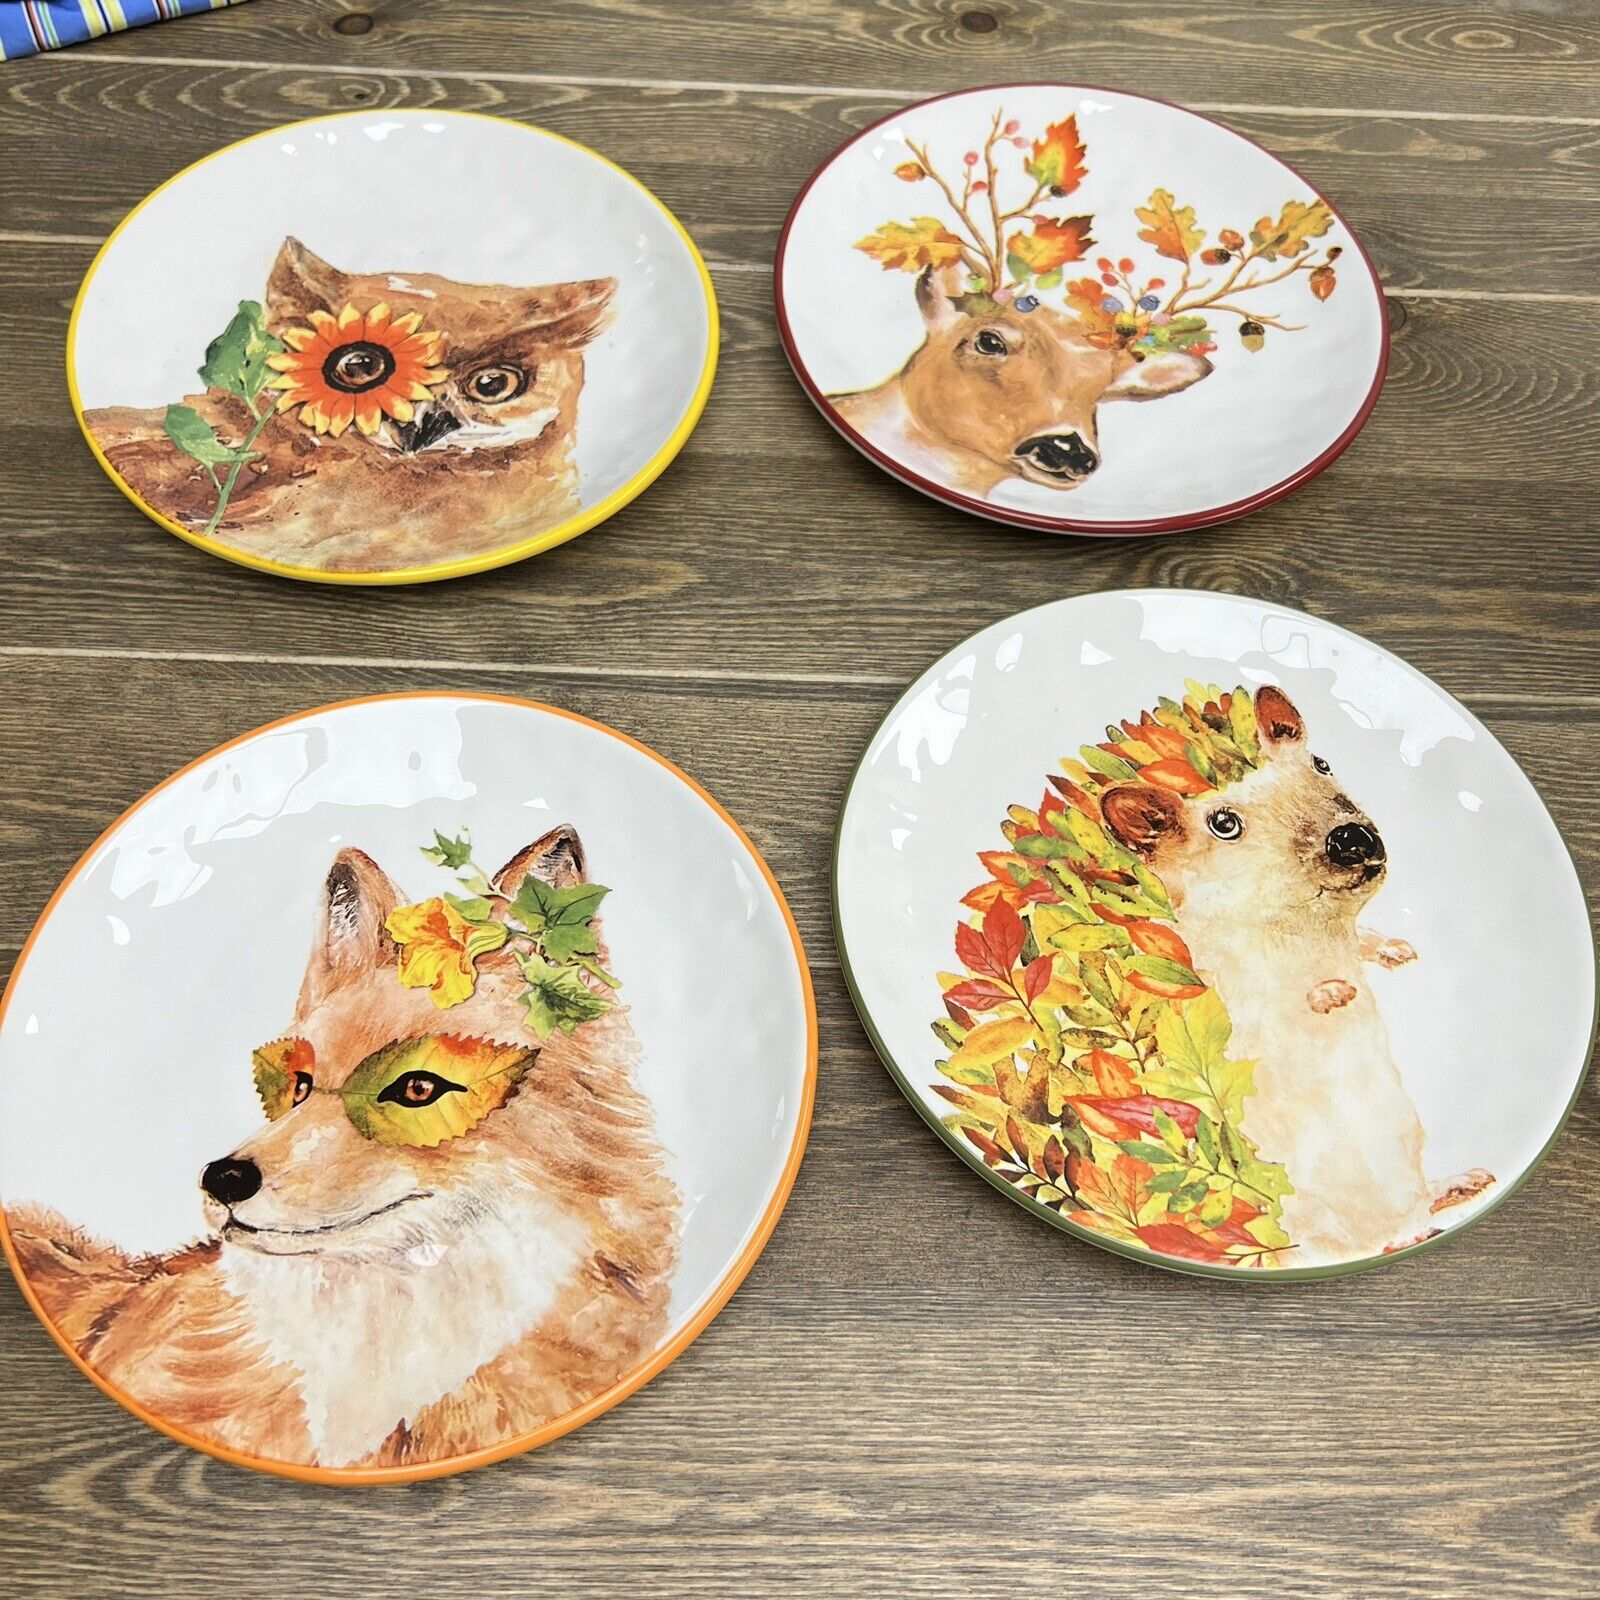 Pier 1 Harvest Garden Critters Fall Plate Set of 4 Owl, Fox, Deer, Hedgehog